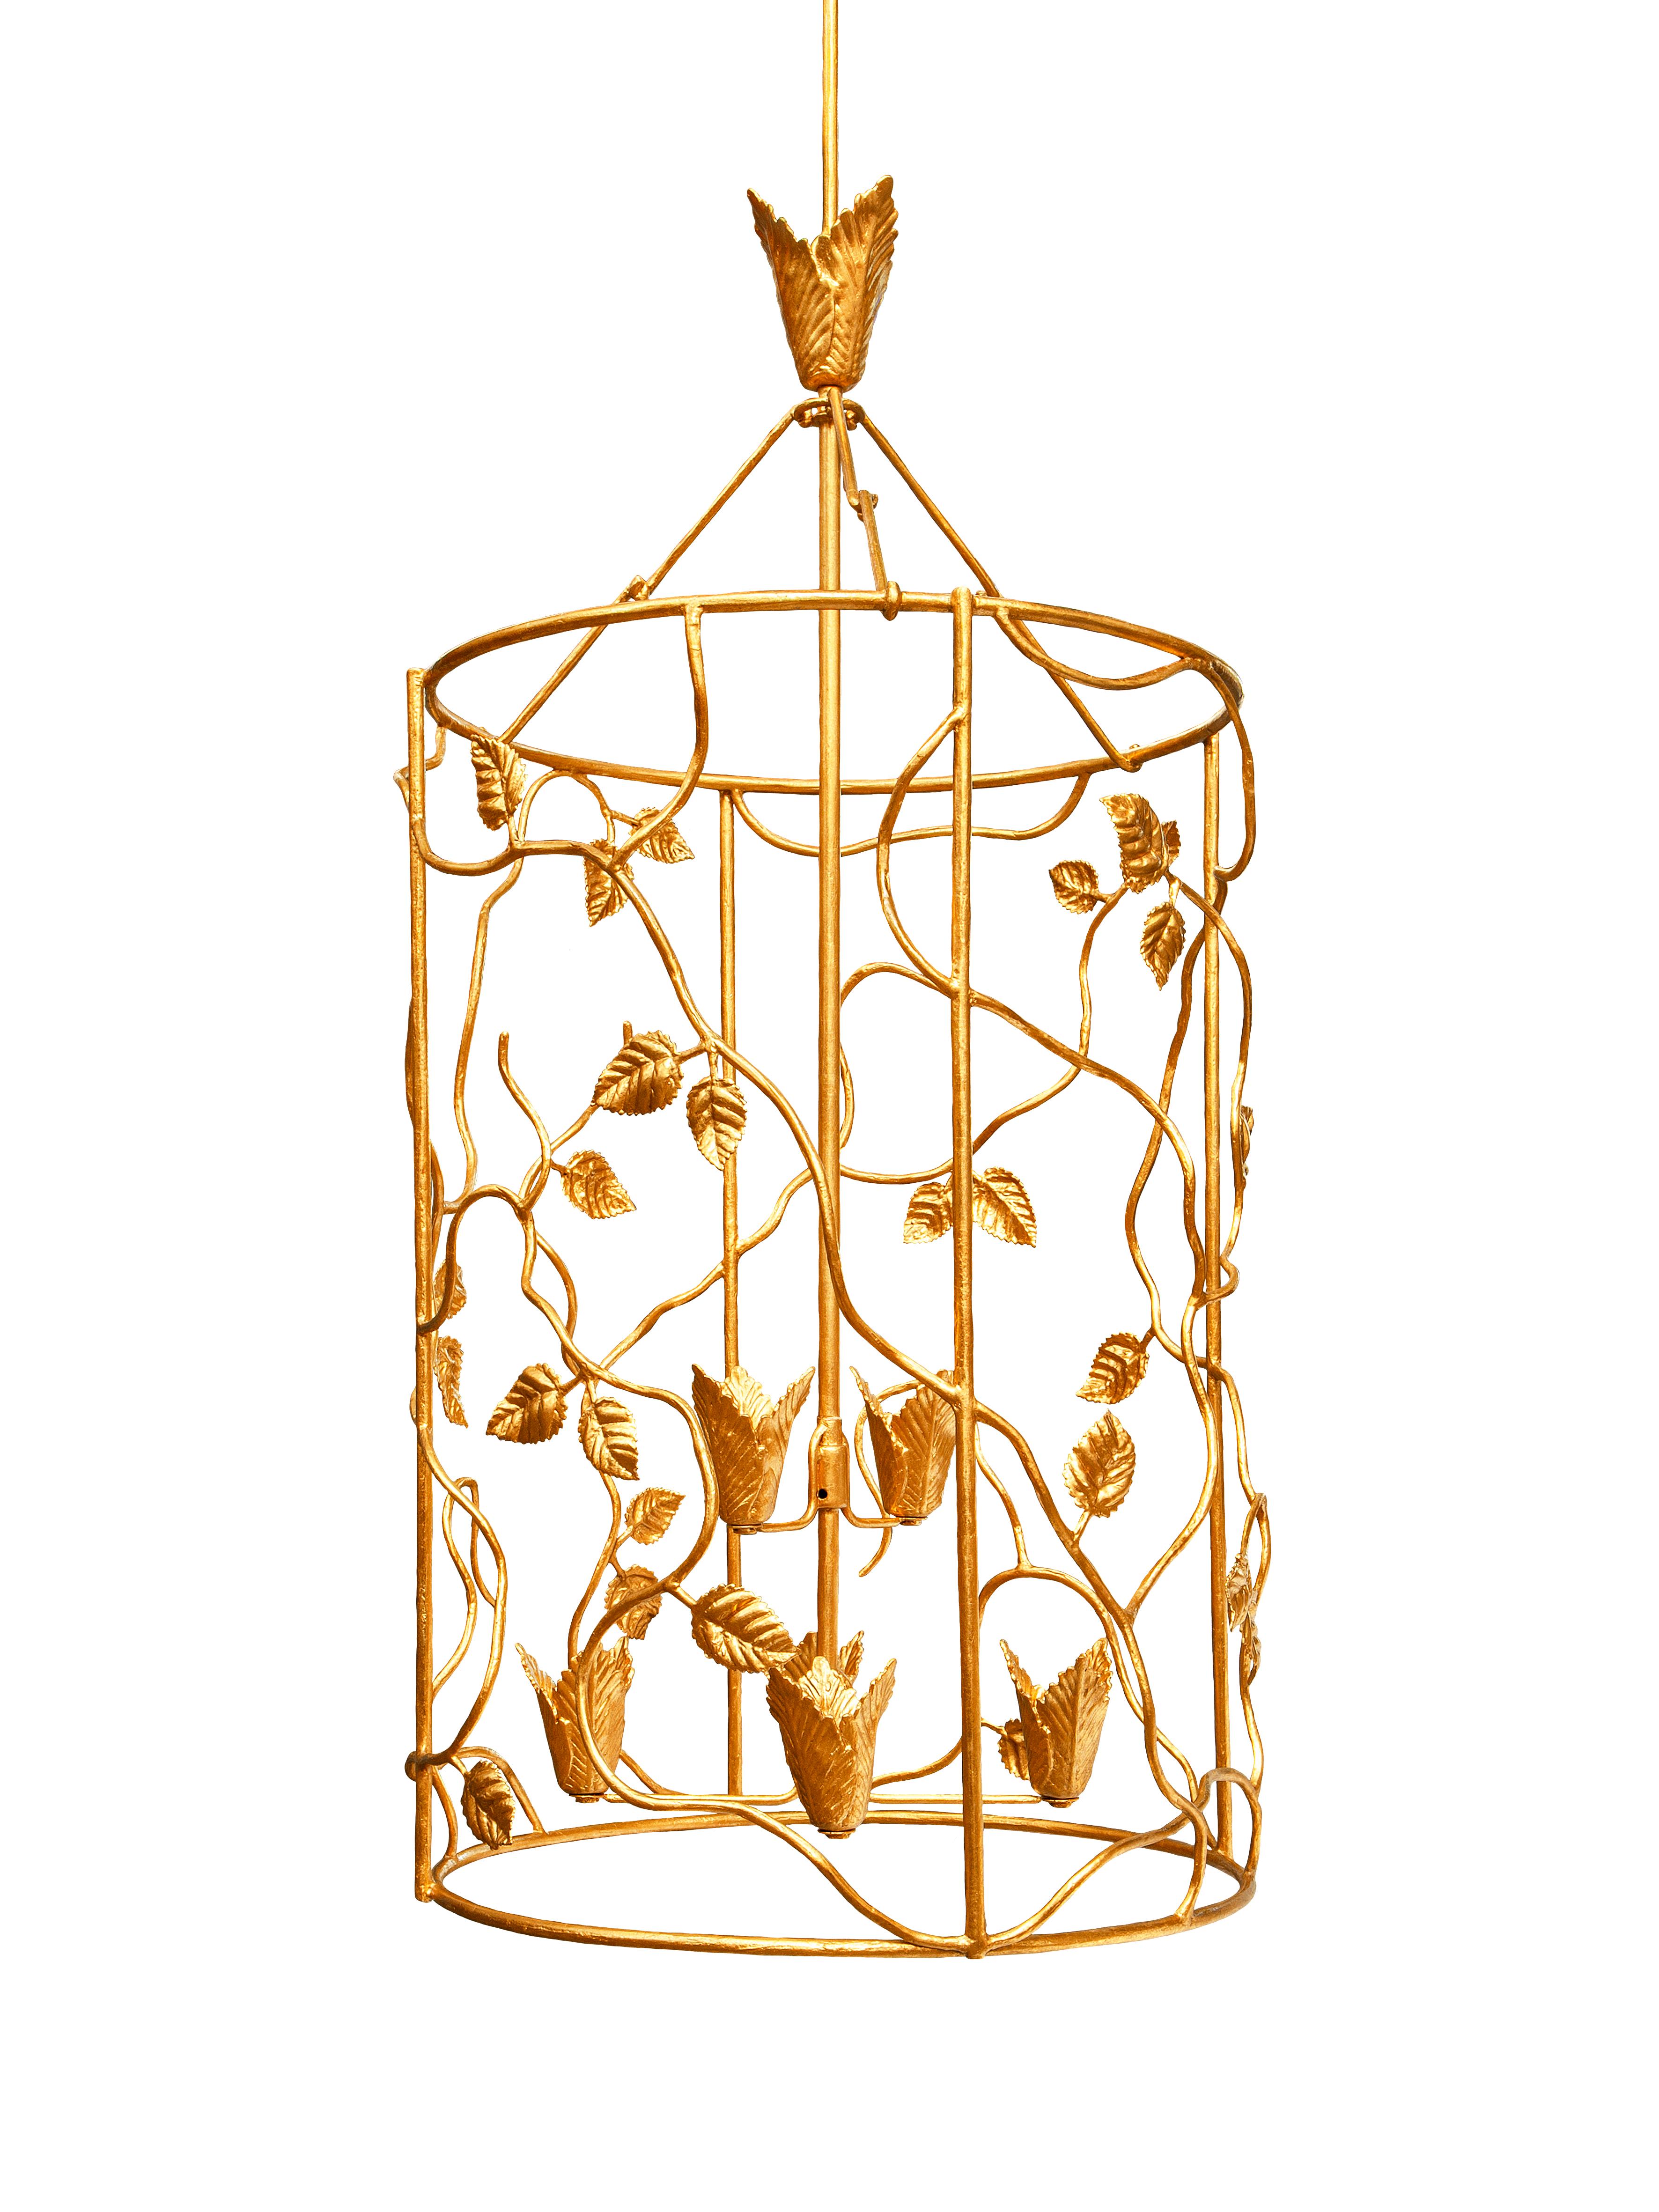 Avec ses feuilles de rose intercalées sur un cadre texturé, cette lanterne ressemble à une sculpture naturaliste. Allumeur avec 6 ampoules. 
Veuillez noter que ces lanternes sont personnalisables - elles peuvent être fabriquées en différentes